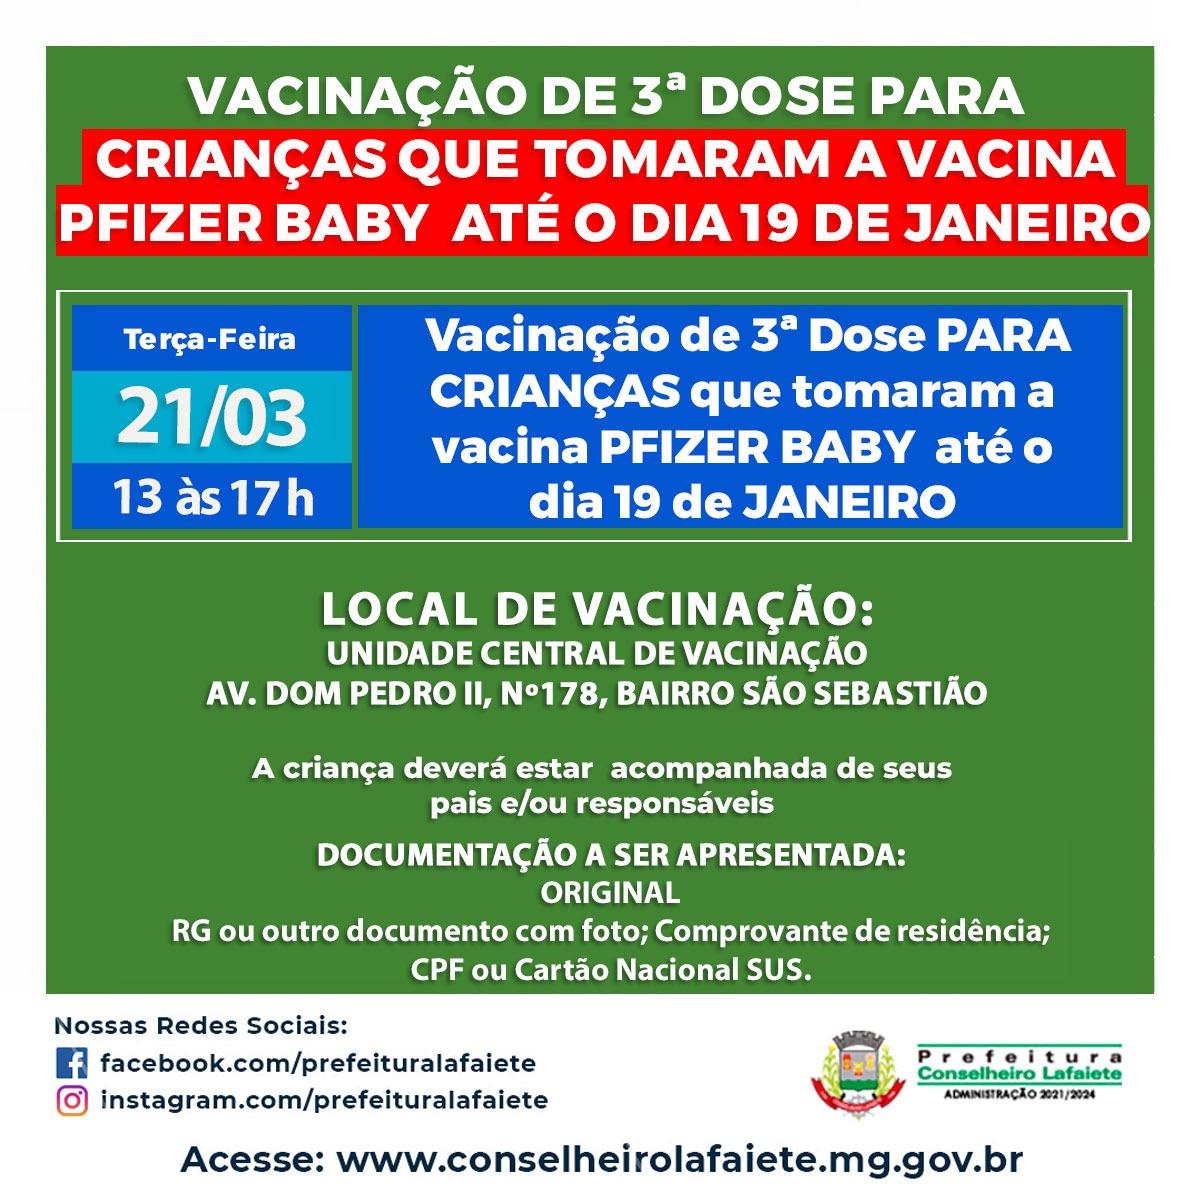 Vacinação de 3ª Dose para crianças que tomaram a vacina PFIZER BABY até o dia 19 de janeiro